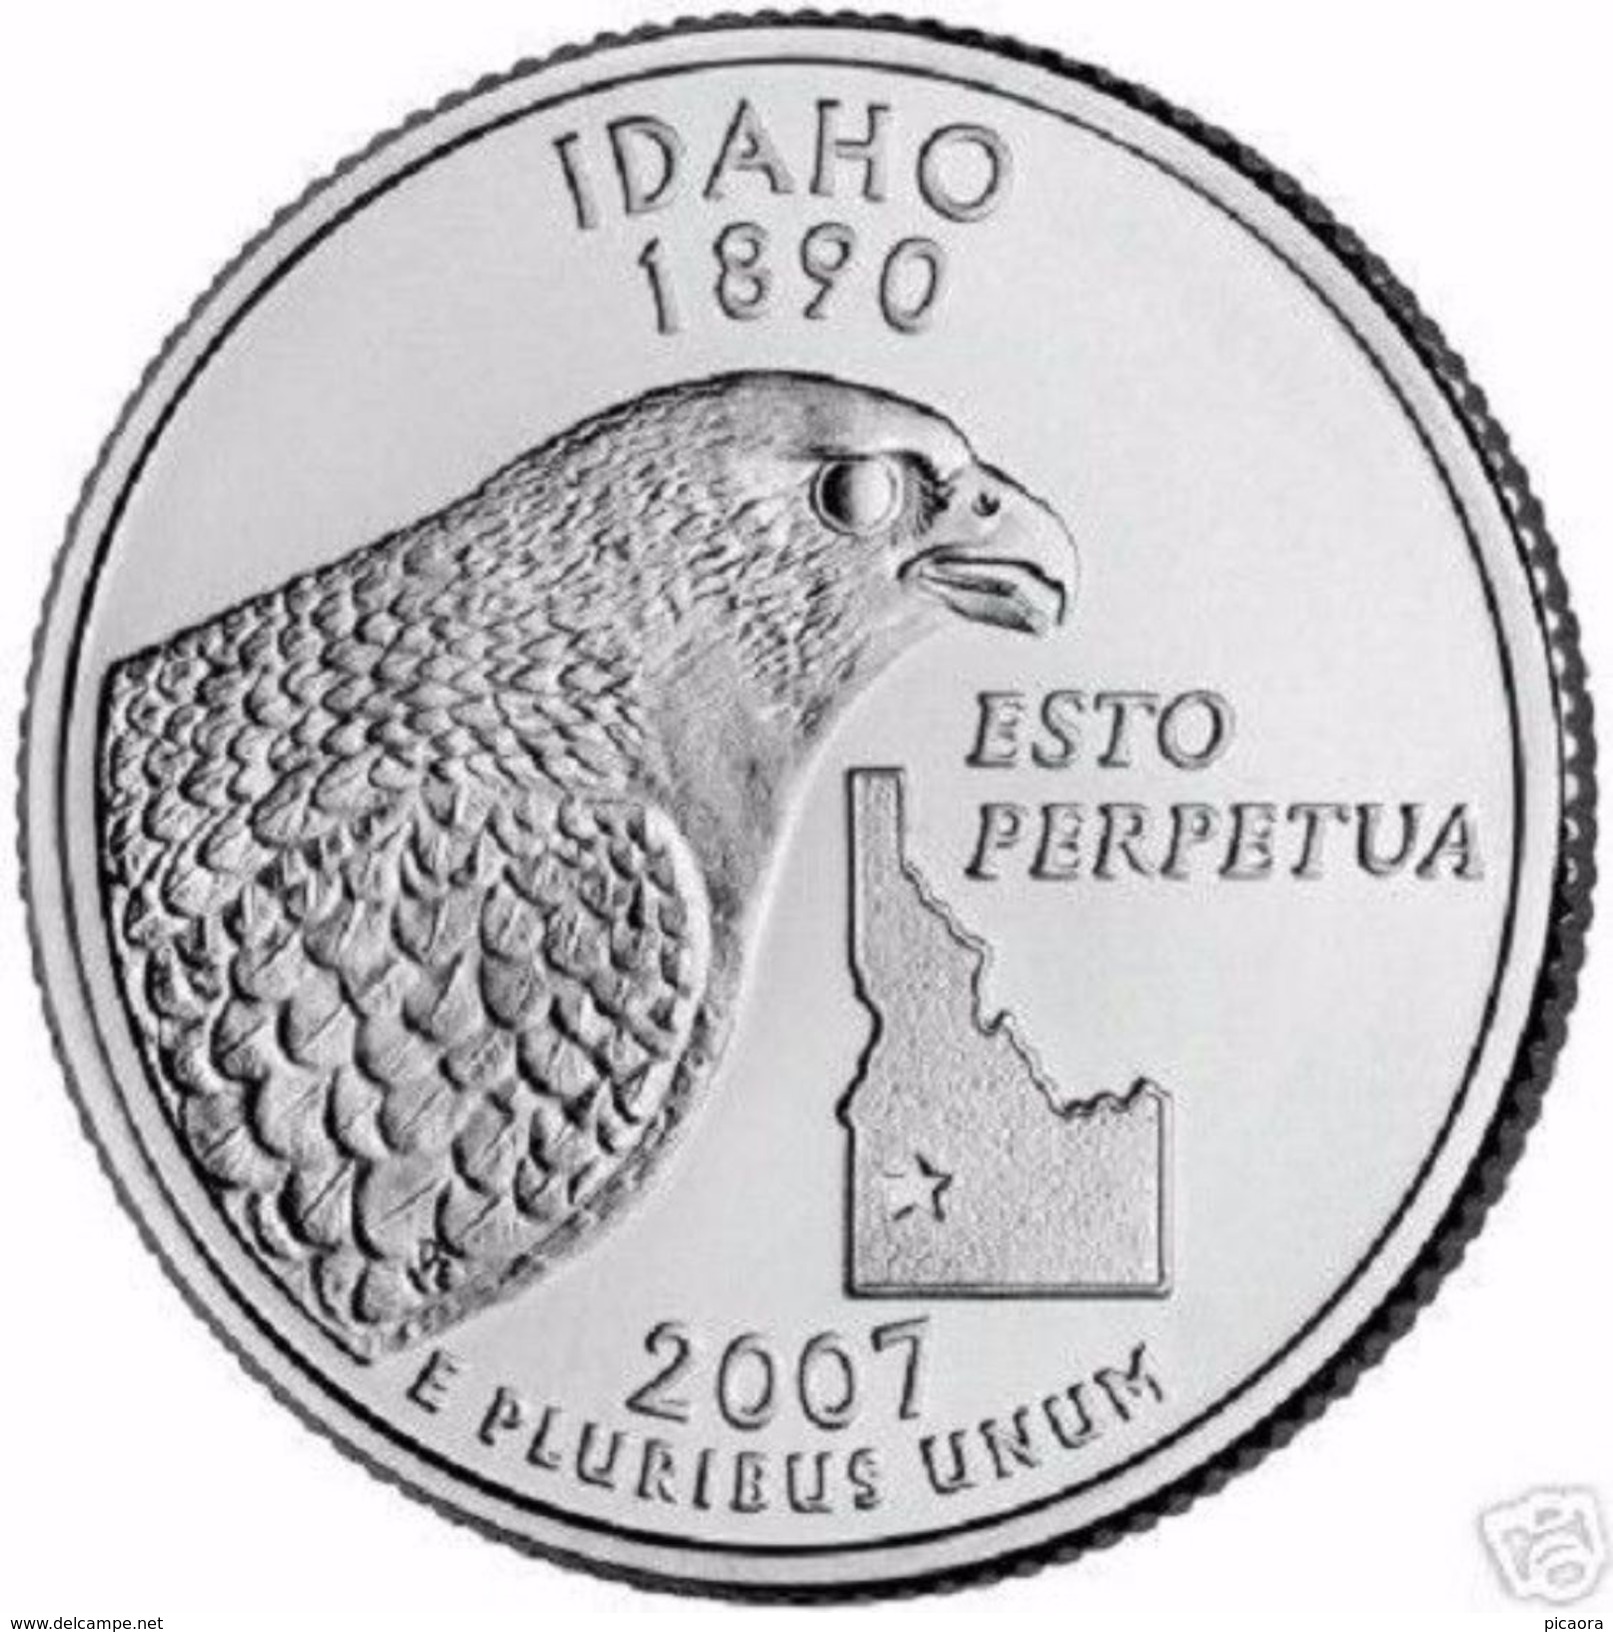 USA EEUU 25 CENTS. QUARTER DOLLAR  IDAHO 2007 D O P  UNC - PAS CIRCULÉE  - SC - 1999-2009: State Quarters